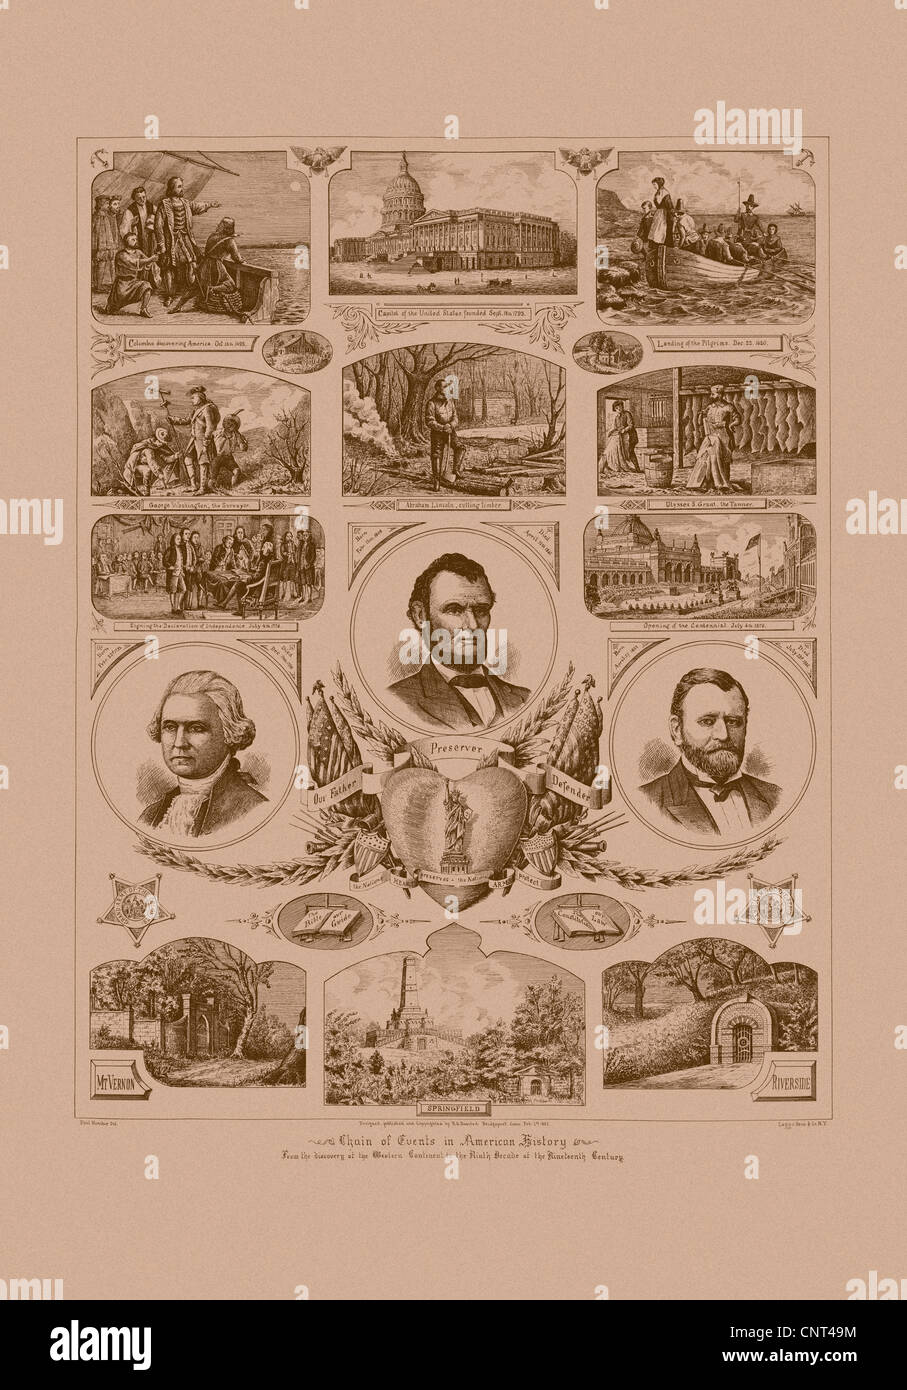 L'histoire de l'Amérique Vintage print avec photos des présidents Ulysses S. Grant, Abraham Lincoln et George Washington. Banque D'Images